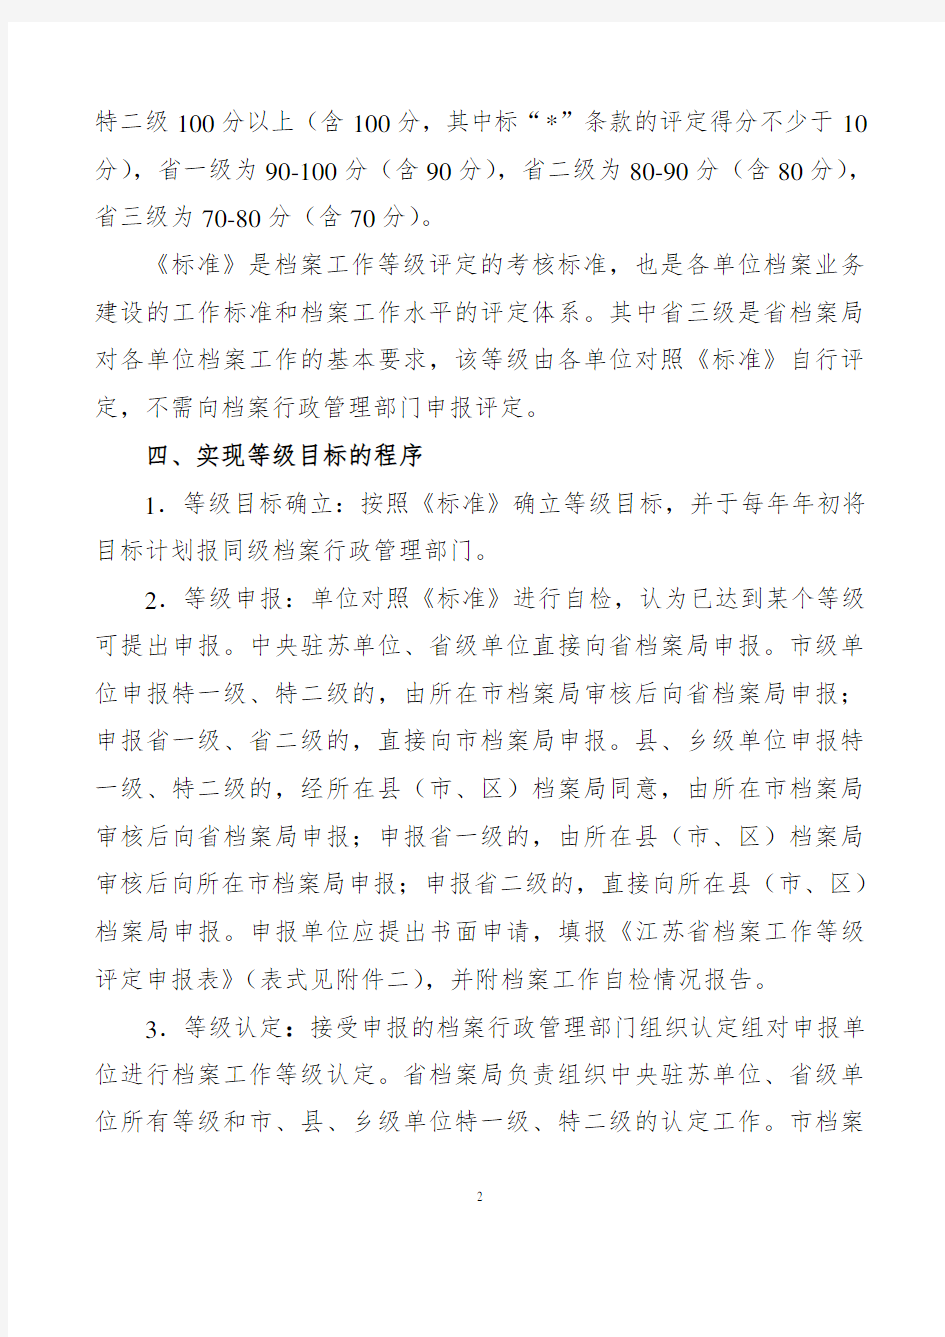 江苏省档案工作等级评定试行办法——苏档〔2003〕106号